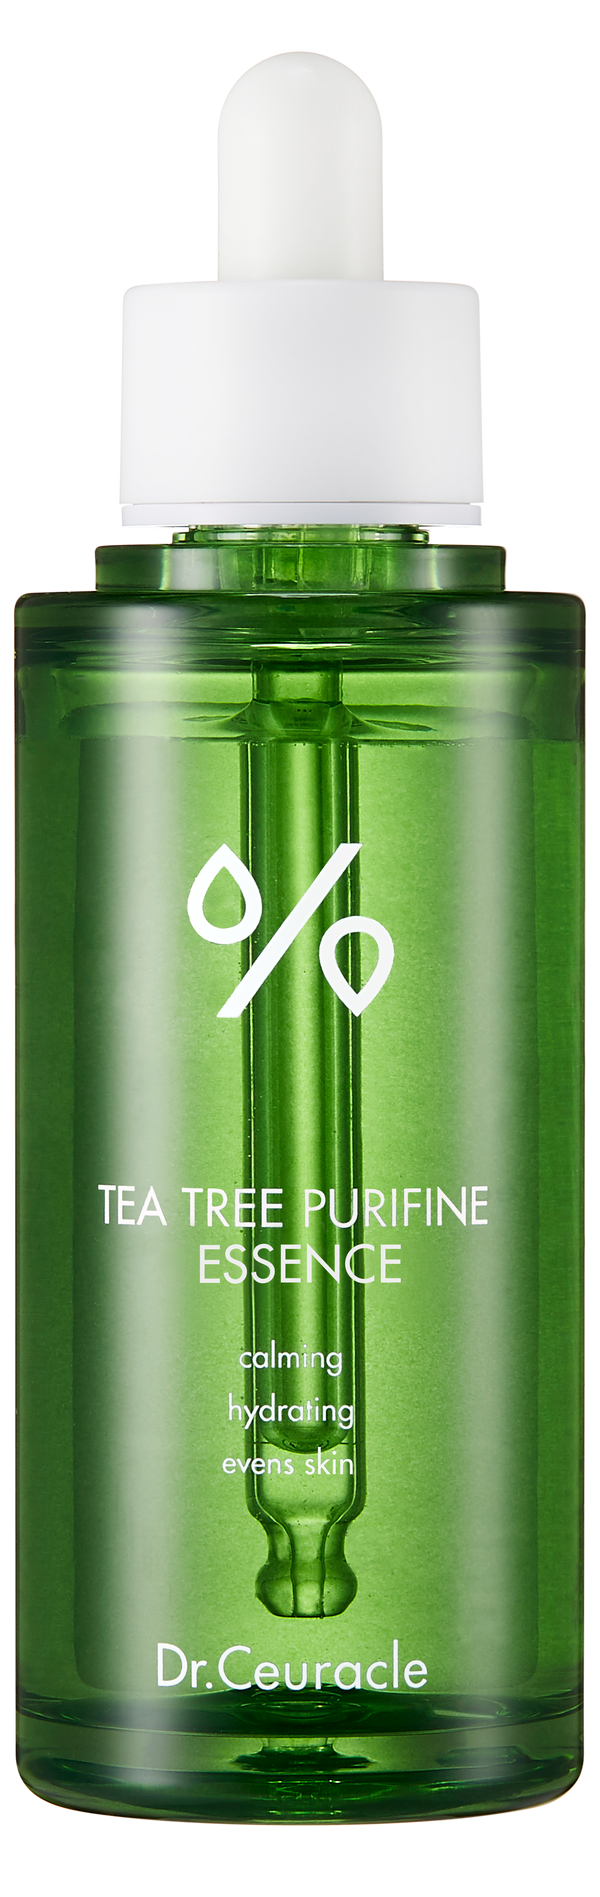 Tea Tree Purifine 95 Essence